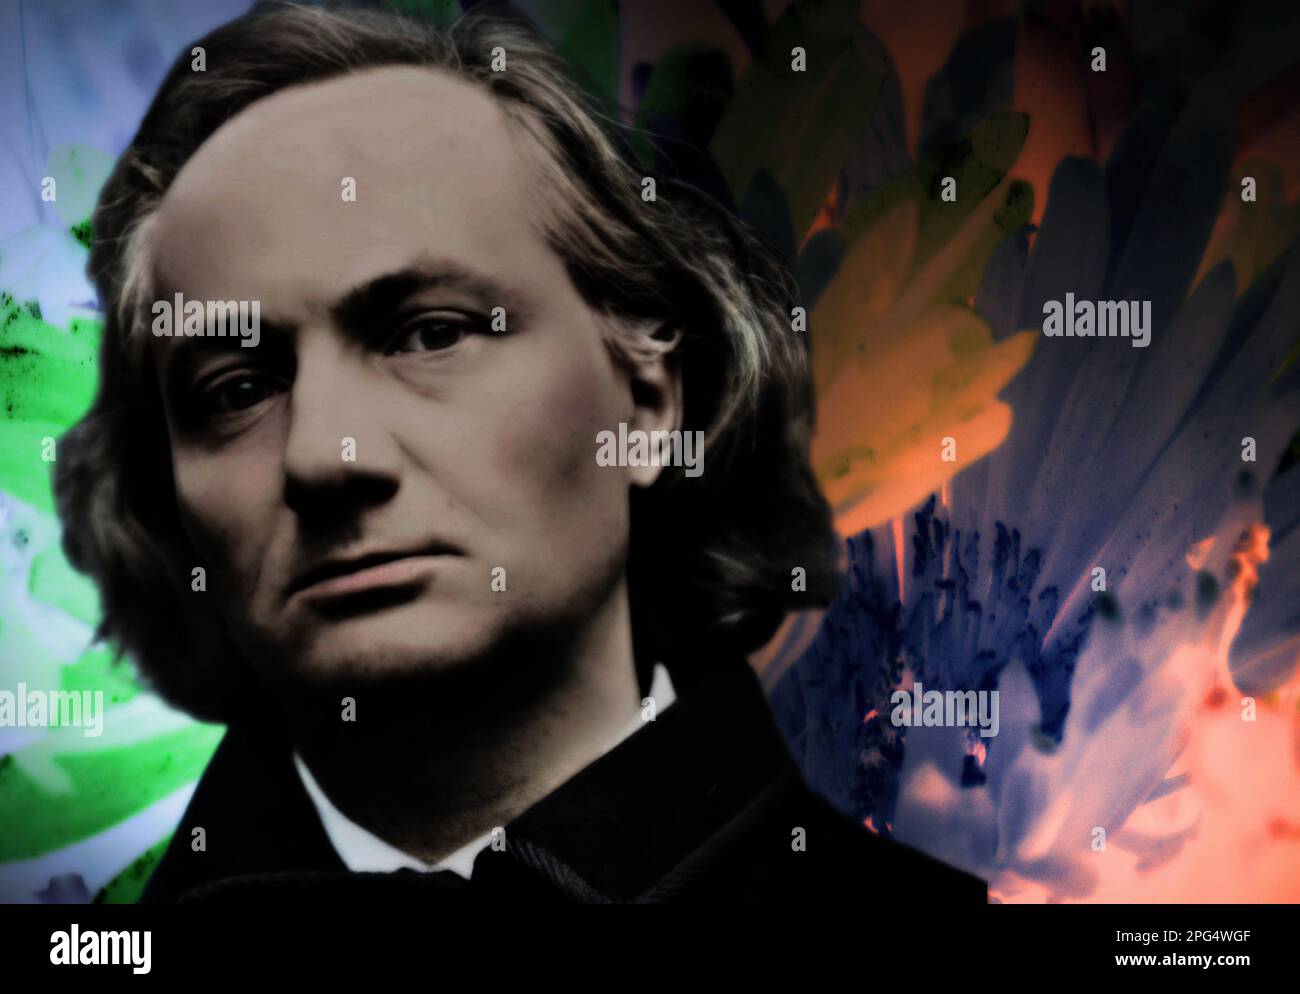 Charles Baudelaire était un poète français de 19th ans, considéré comme l'un des plus importants exposants du symbolisme Banque D'Images